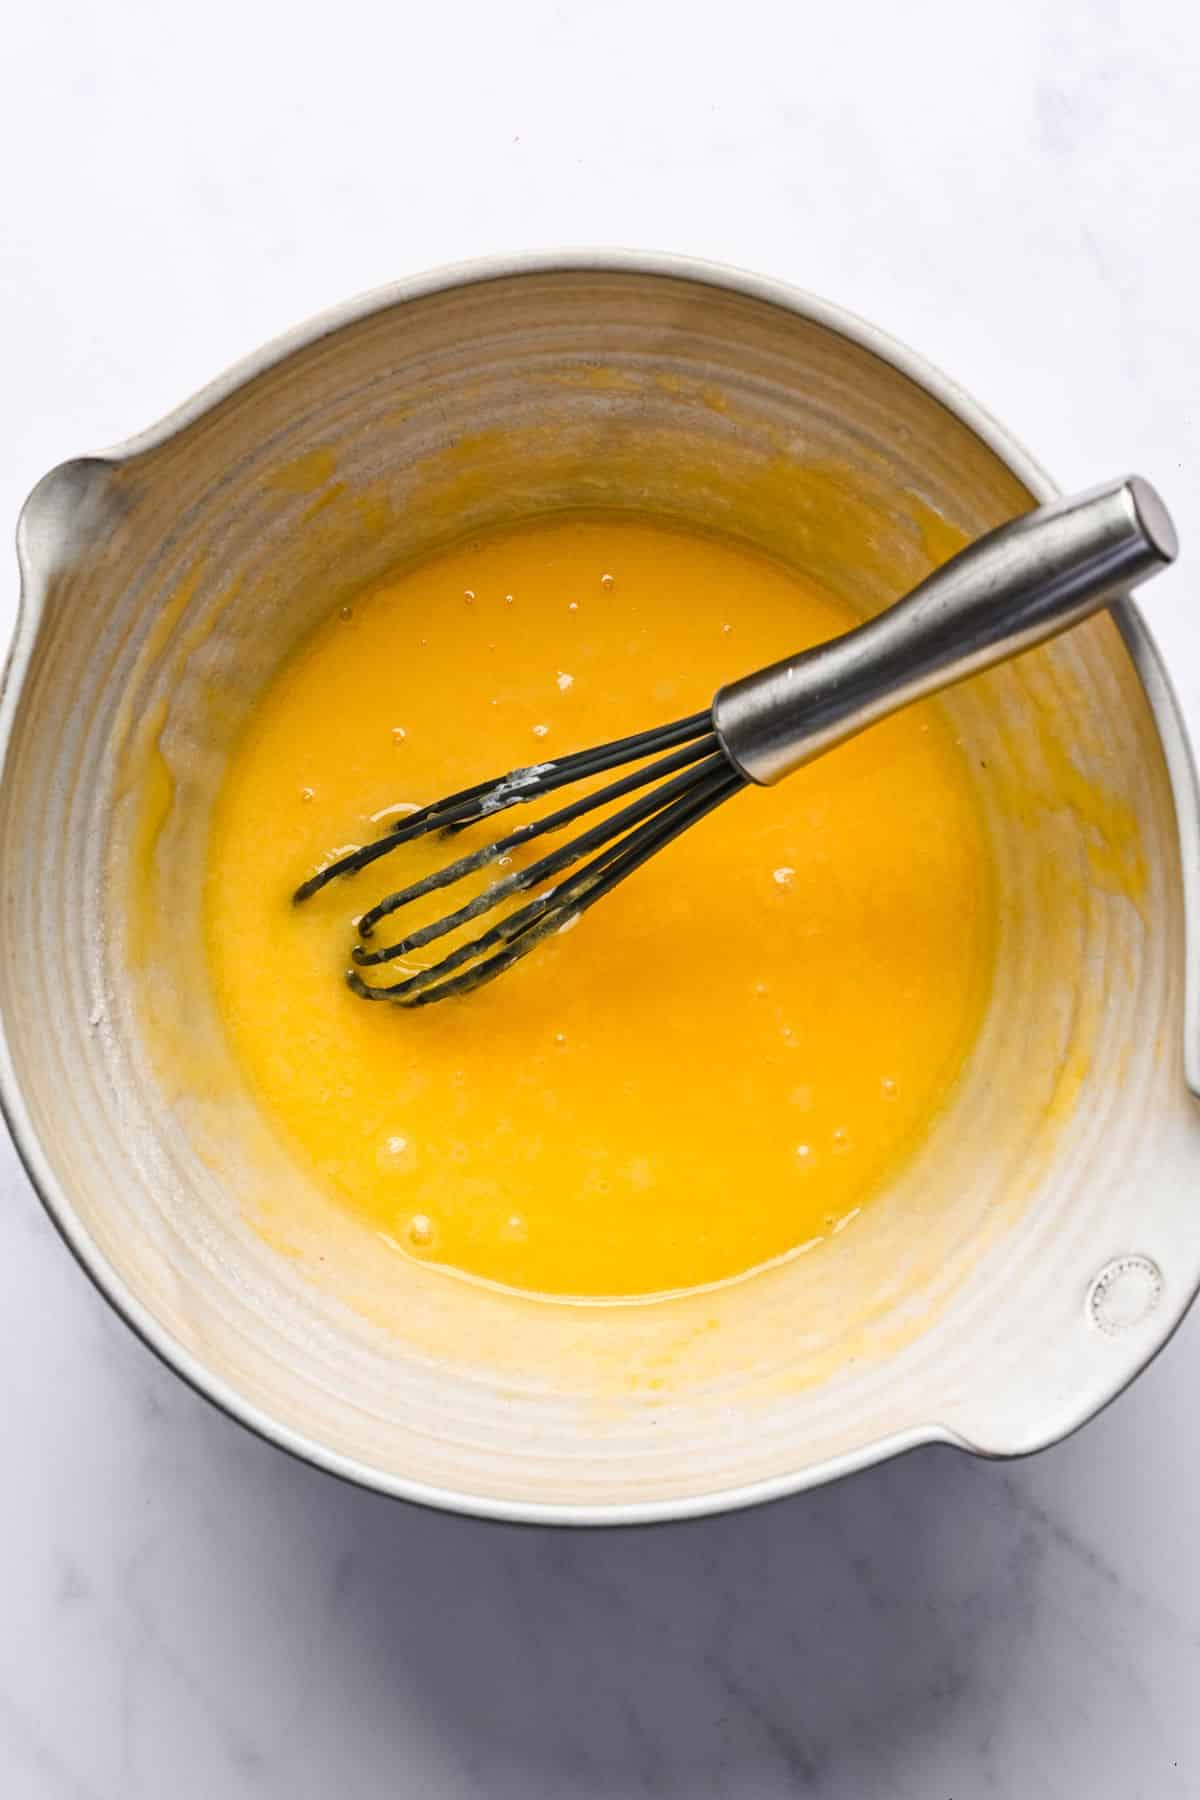 Eggs whisked into lemon oil mixture. 